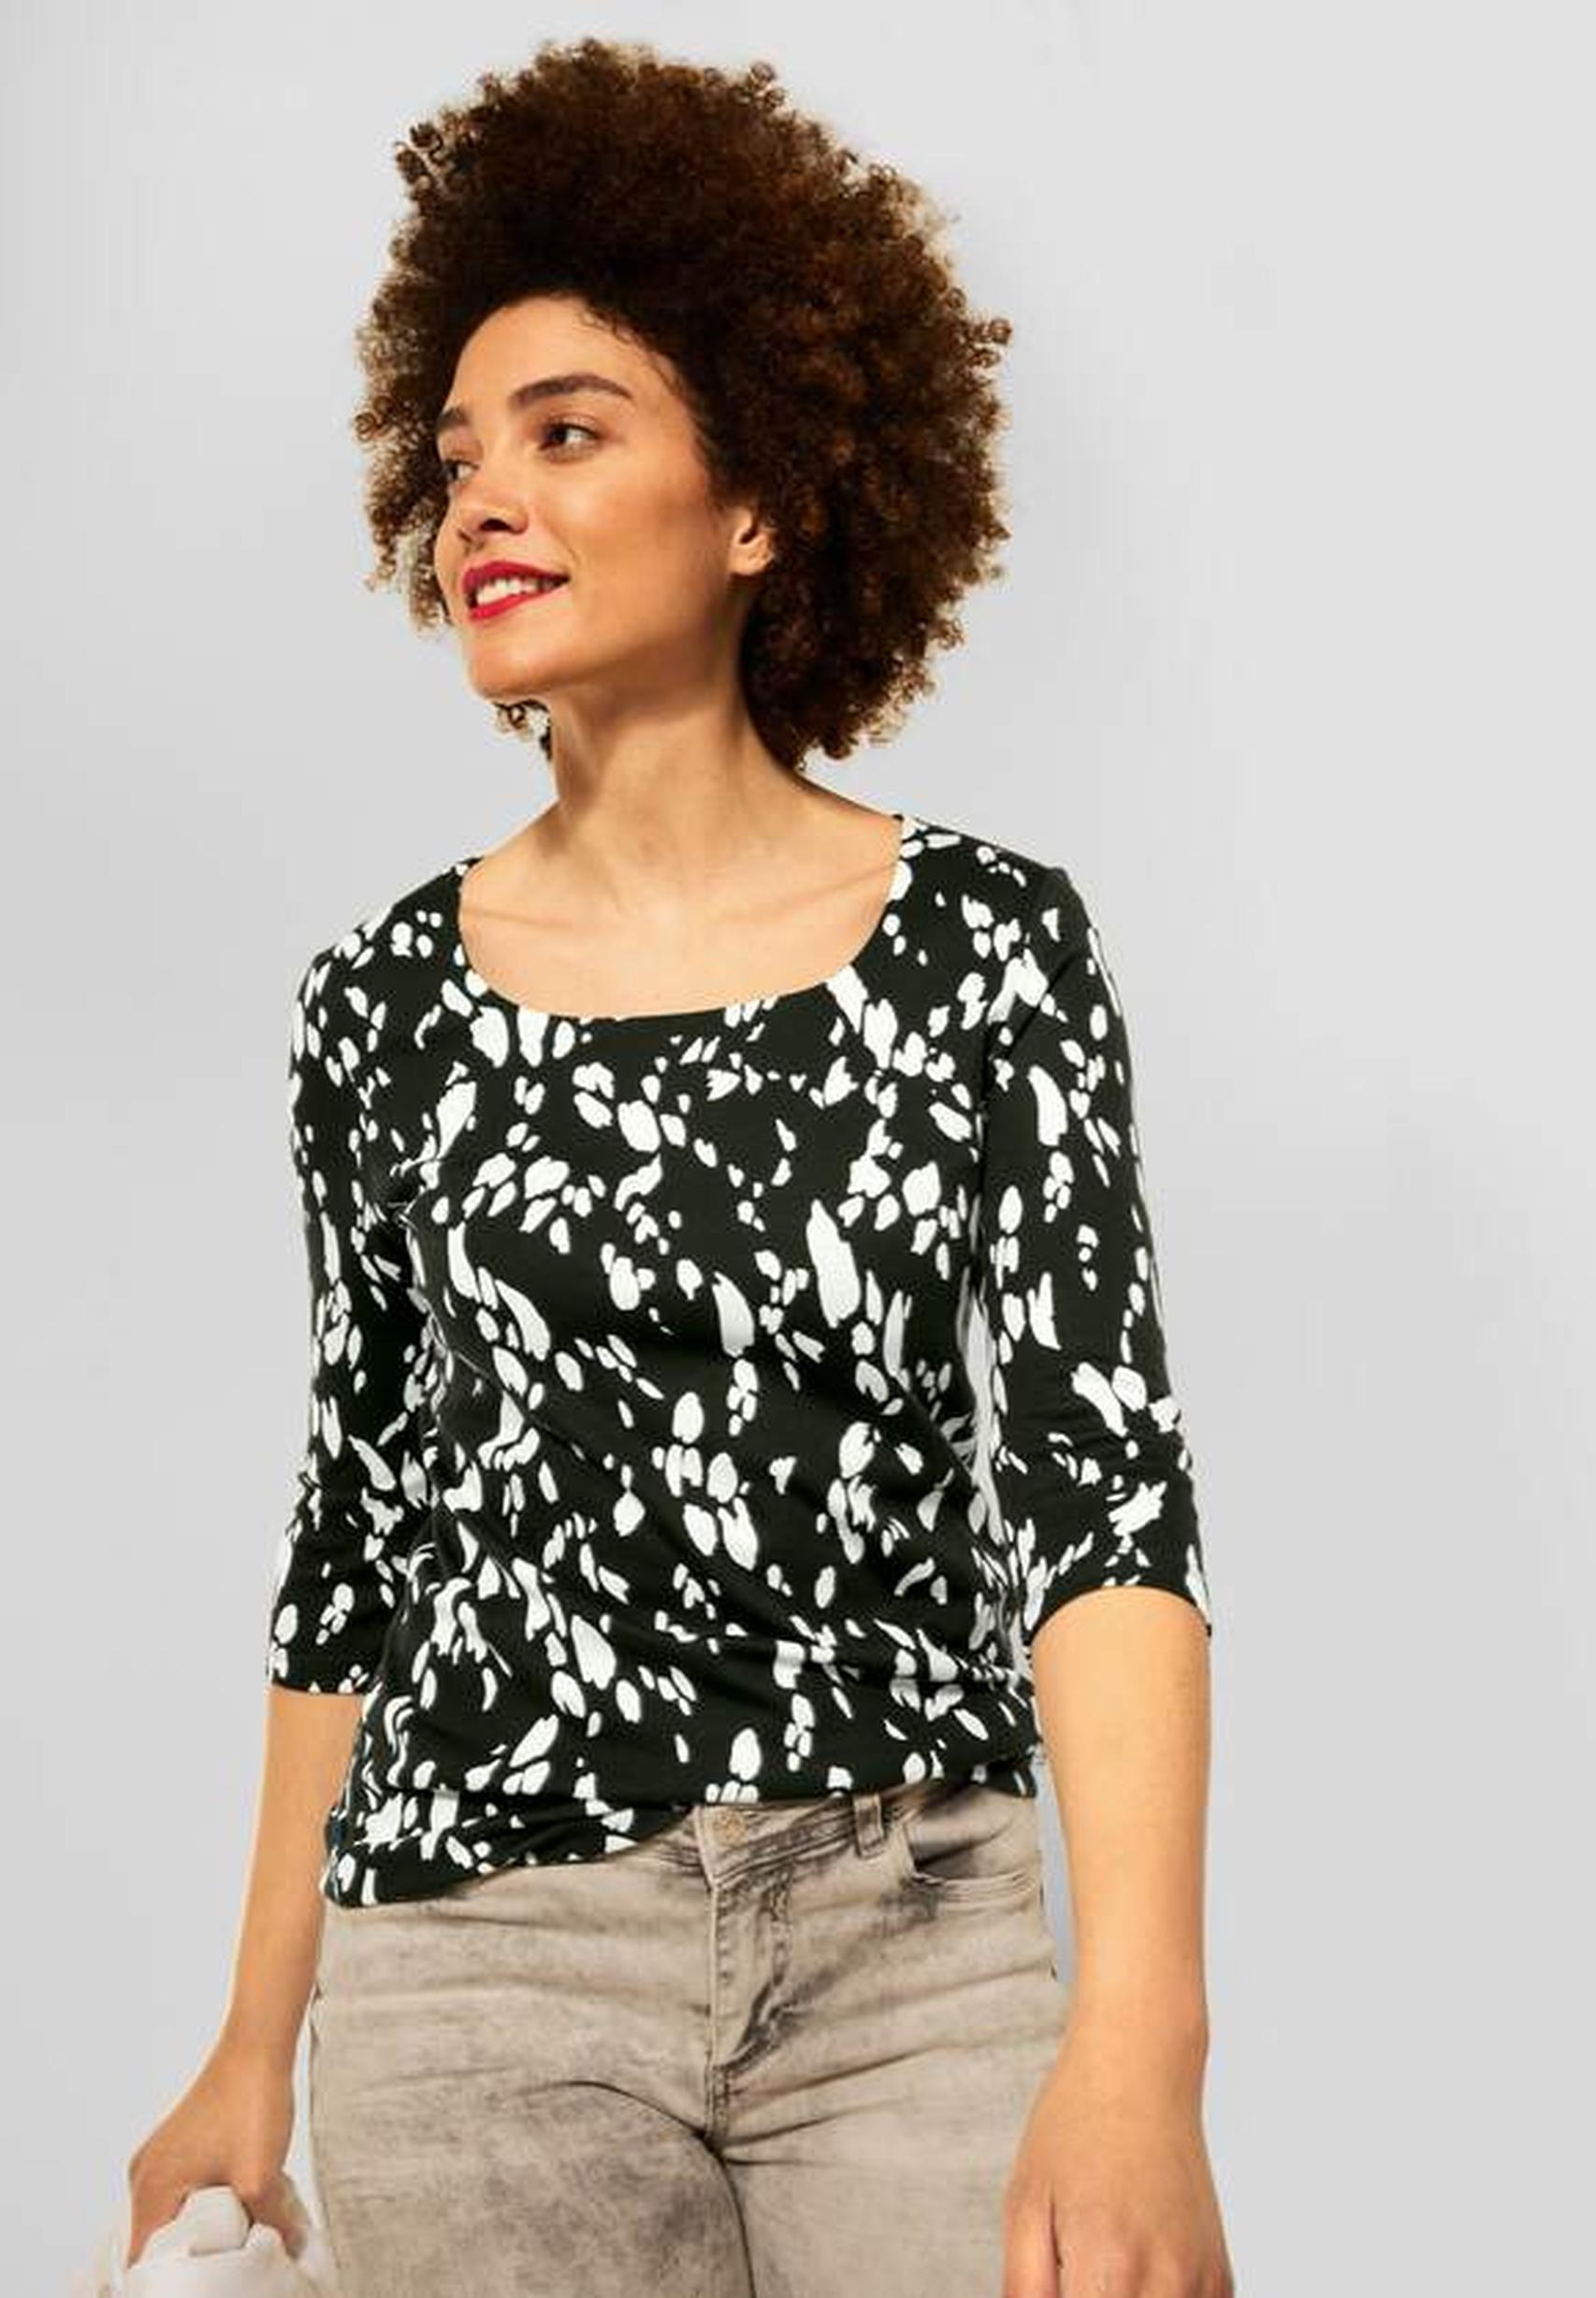 Trendiges Damenshirt Pania aus der Kollektion von Street One in full olive  - 318331